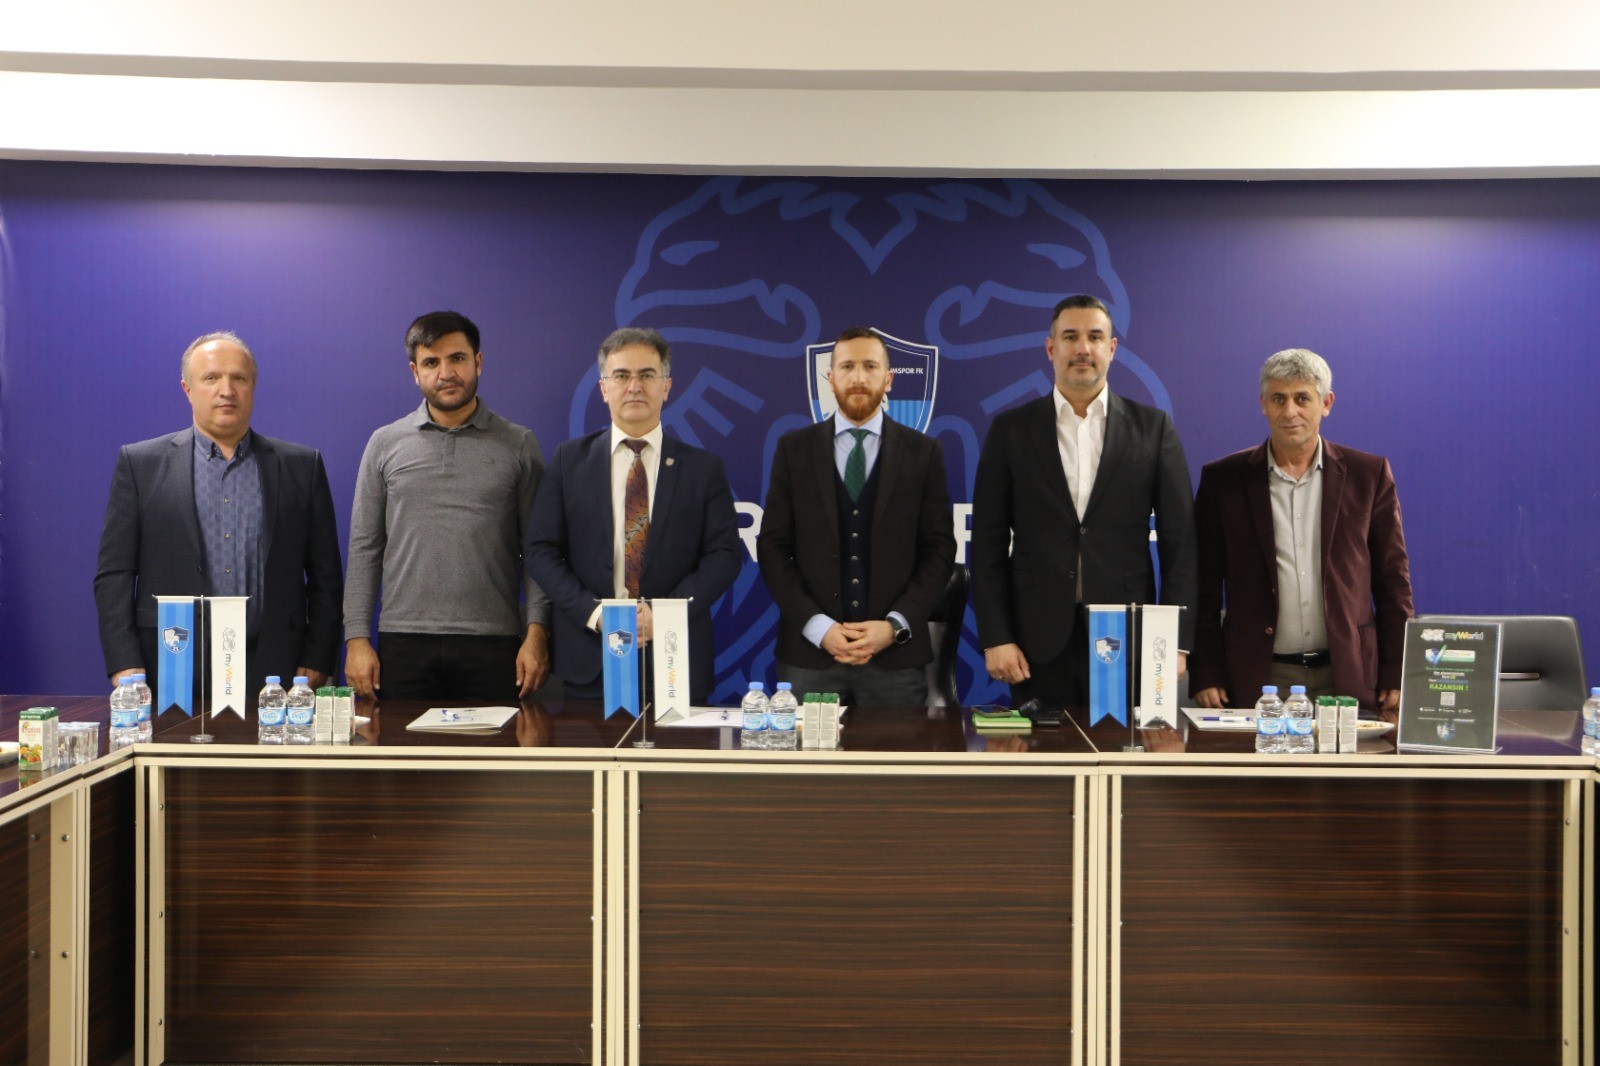 Erzurumspor FK, myWorld ile iş ortaklığı sağladı